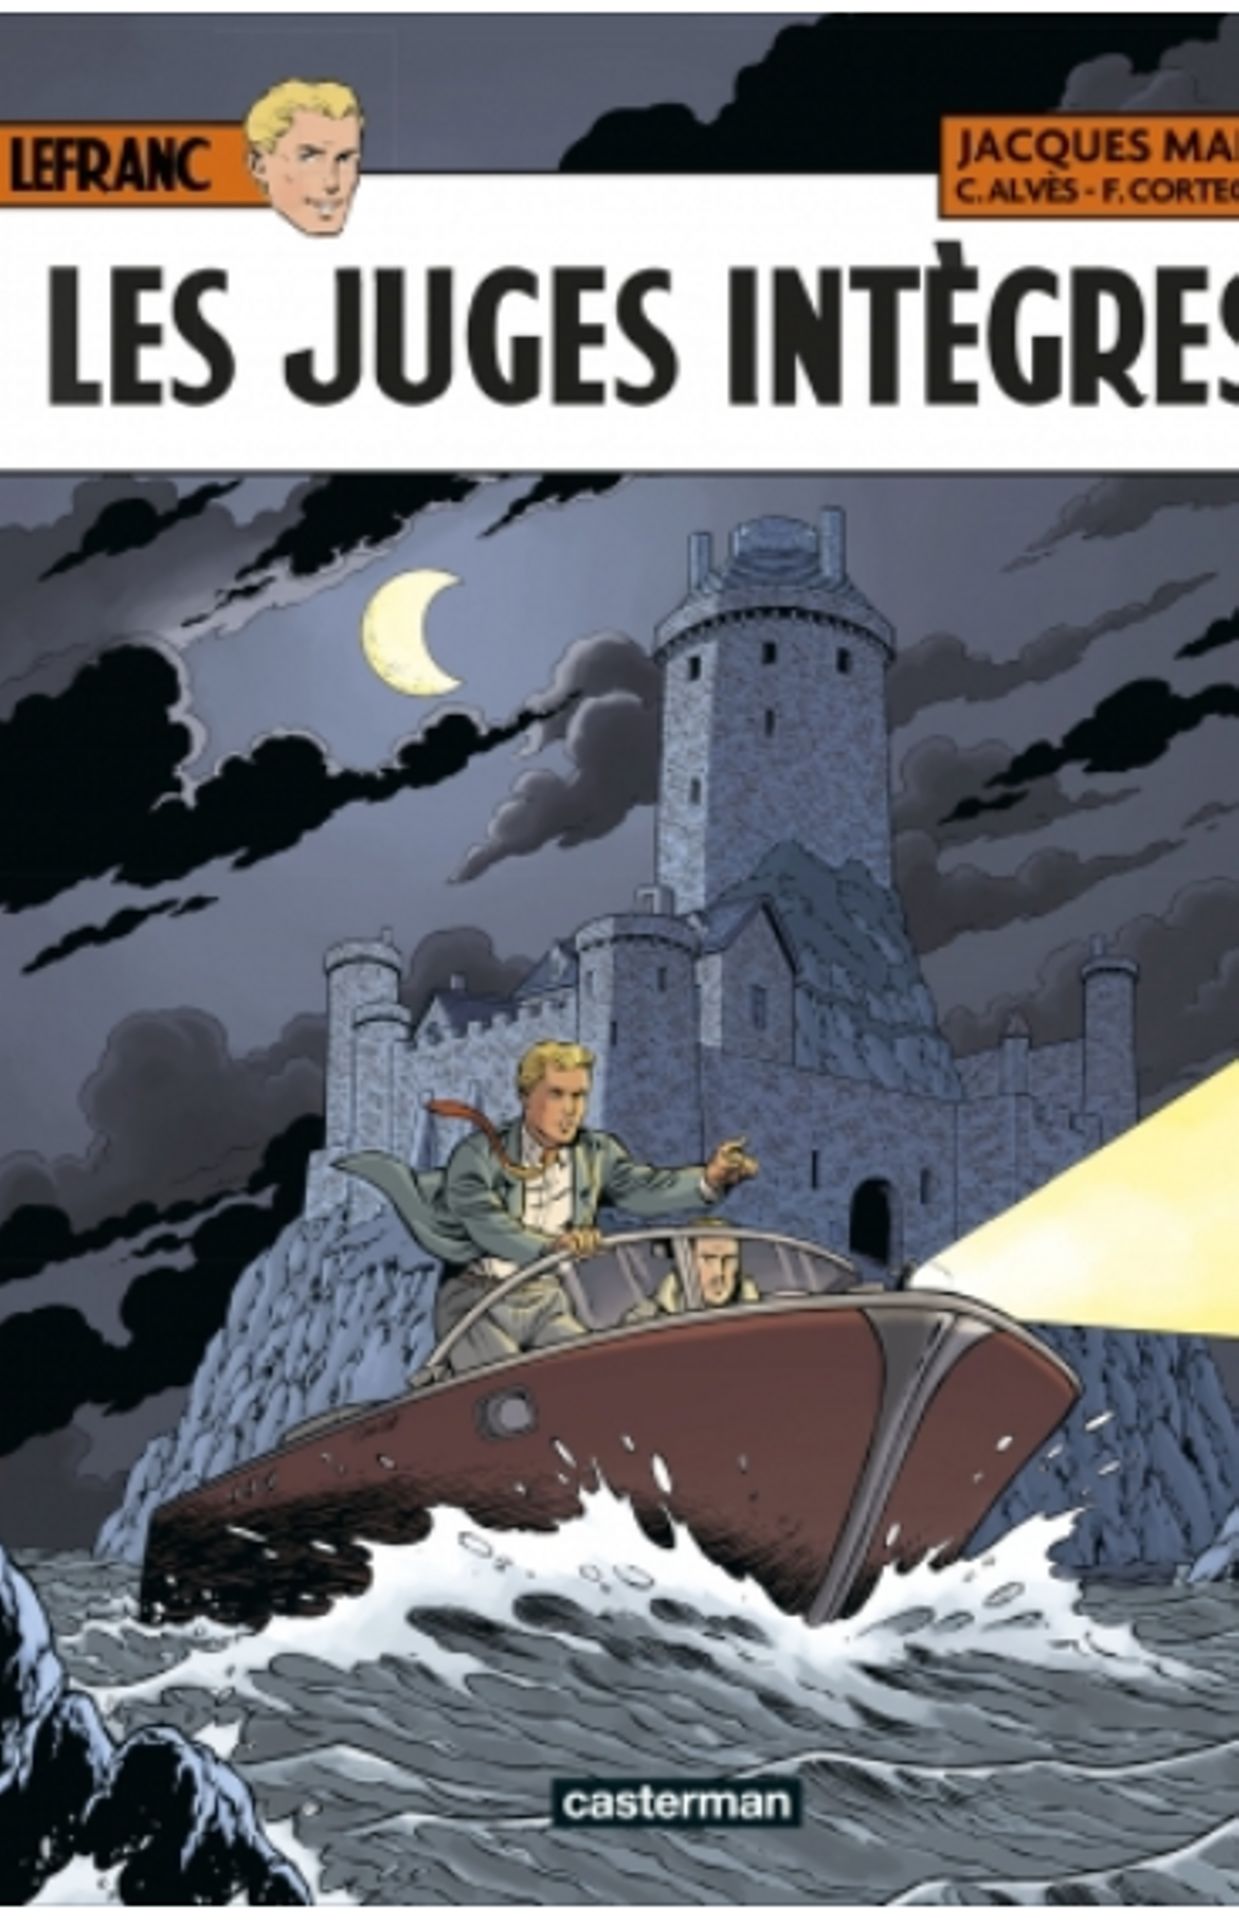 Première de couverture de la bande dessinée " Les juges intègres", sortie ce mercredi 17 novembre en librairie.